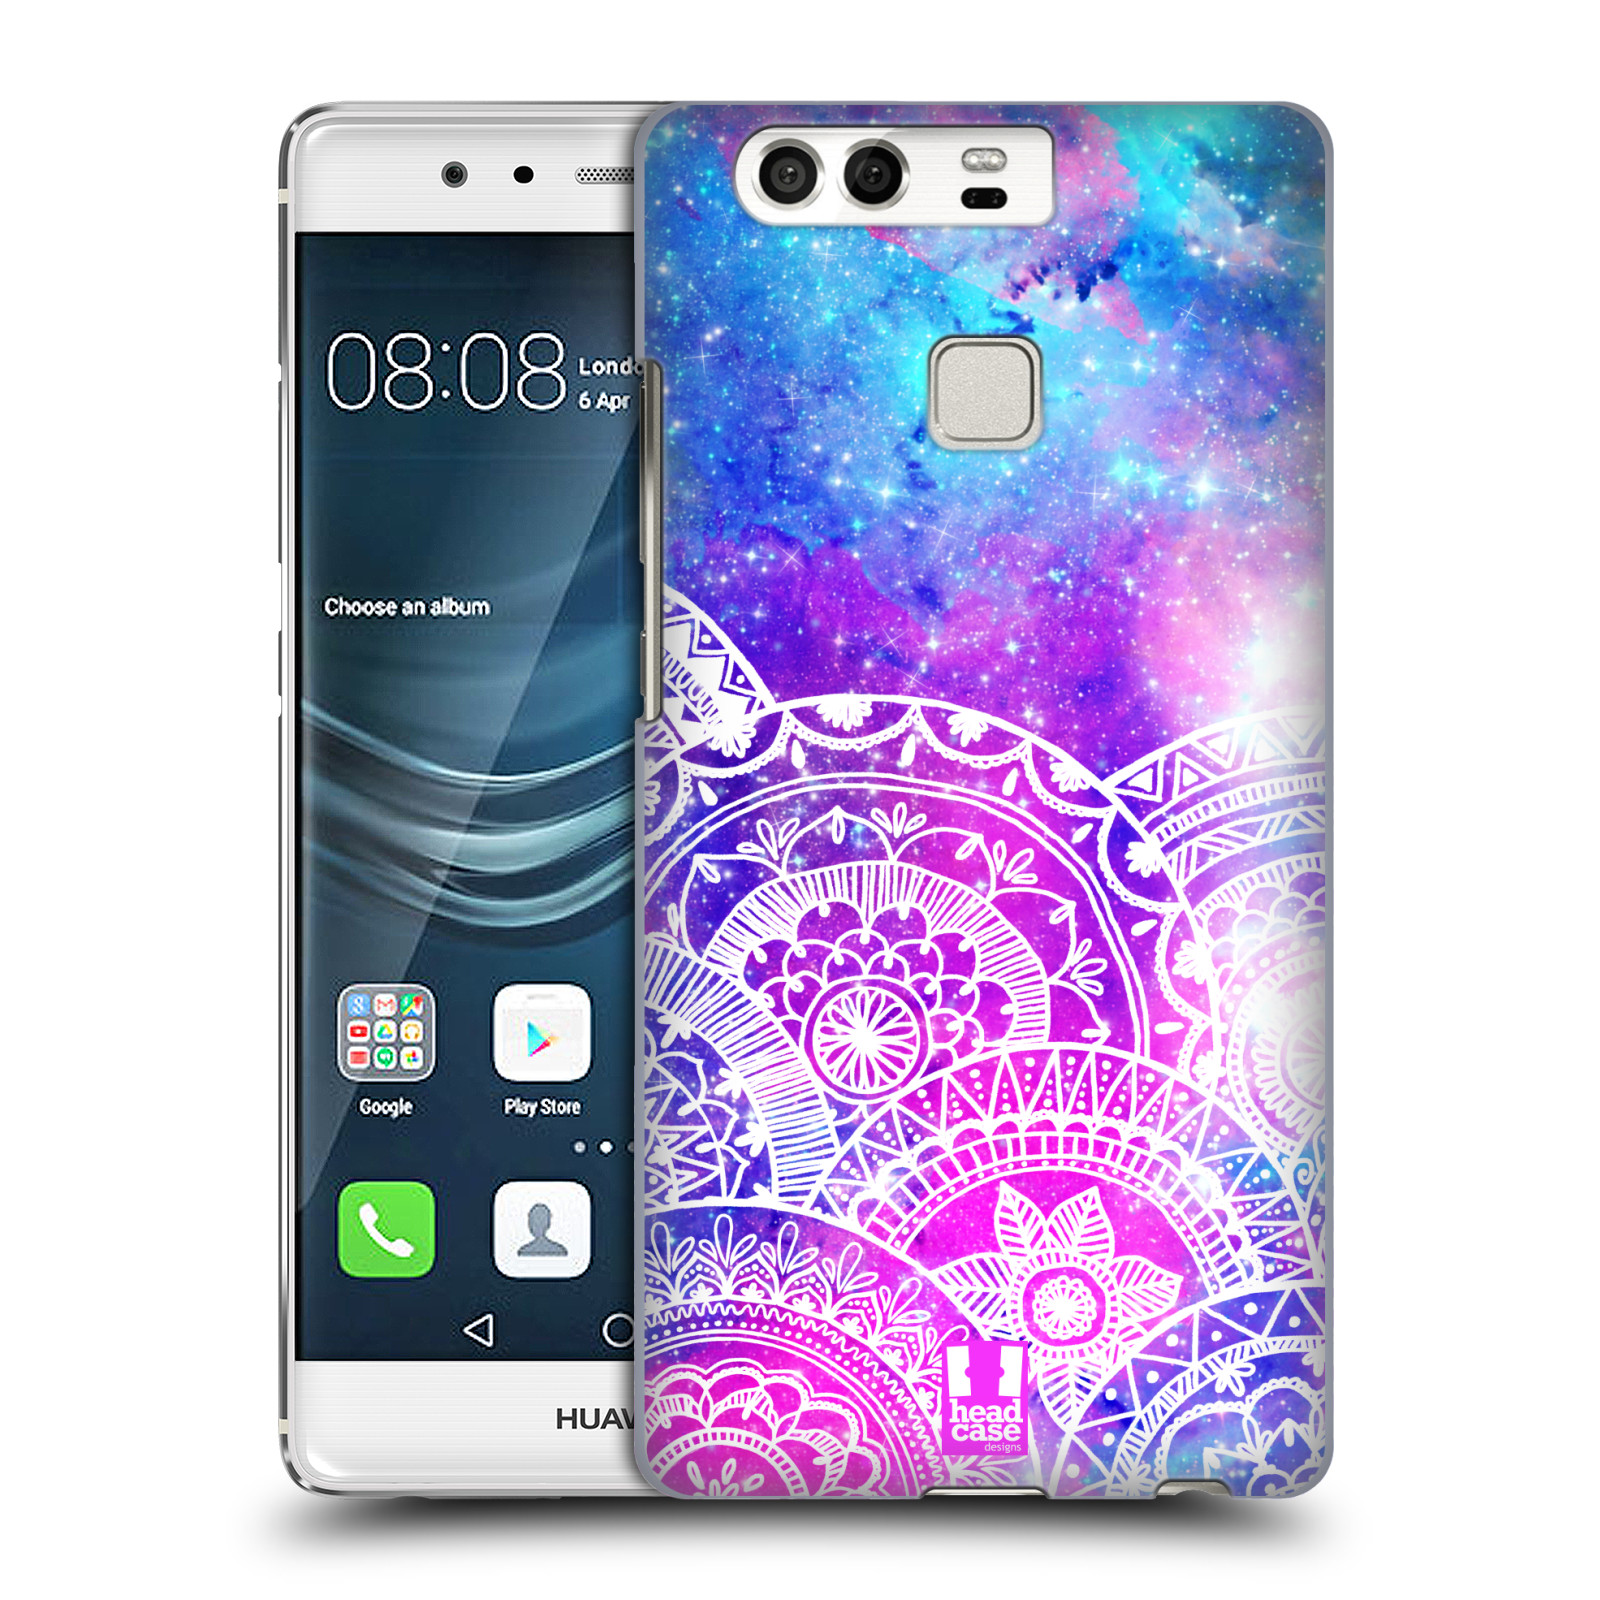 Pouzdro na mobil Huawei P9 / P9 DUAL SIM - HEAD CASE - Mandala nekonečná galaxie